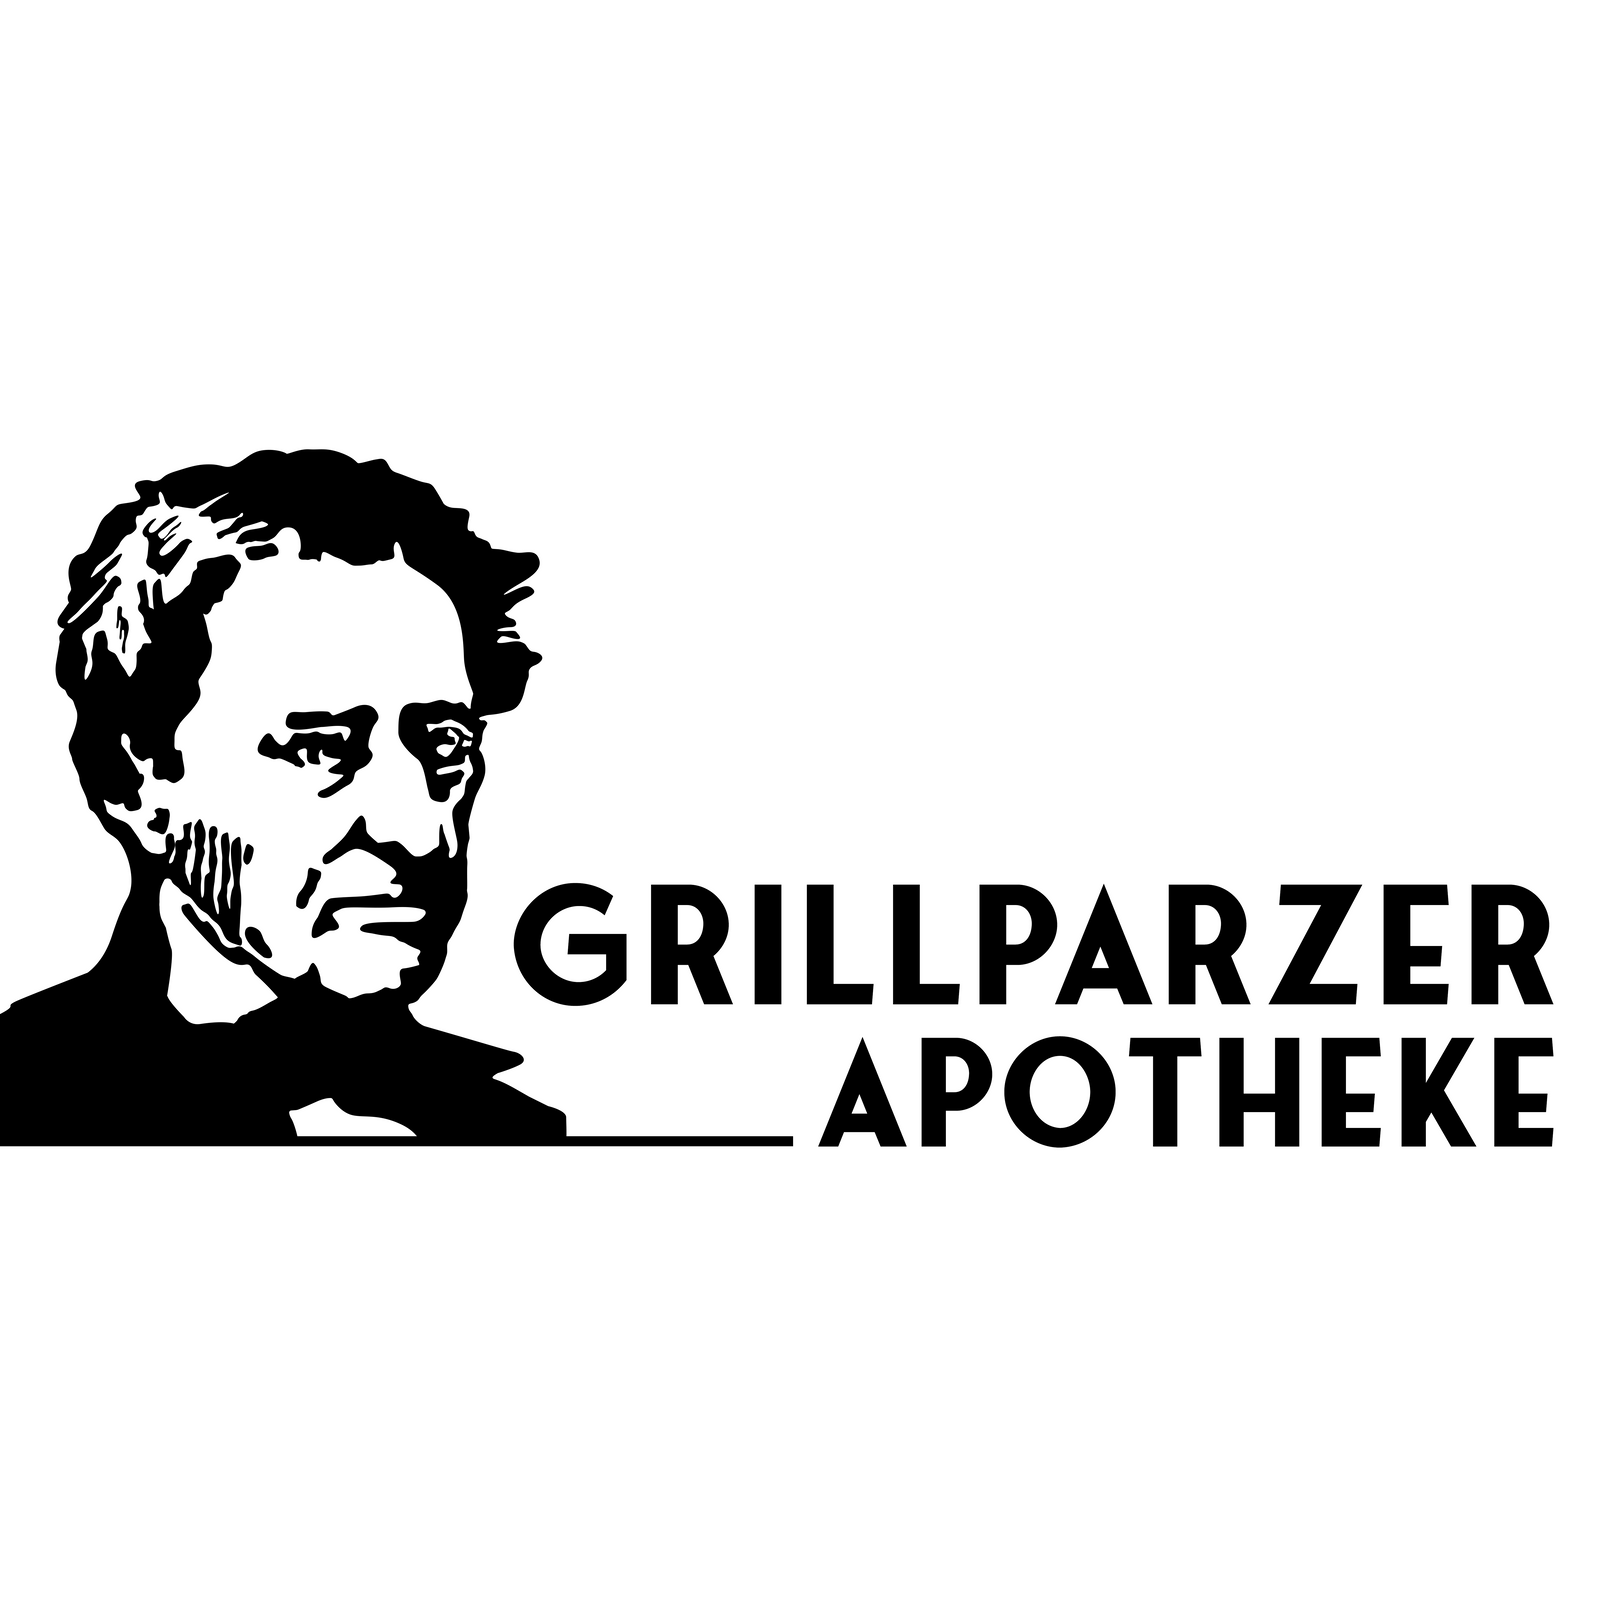 Grillparzer Apotheke  